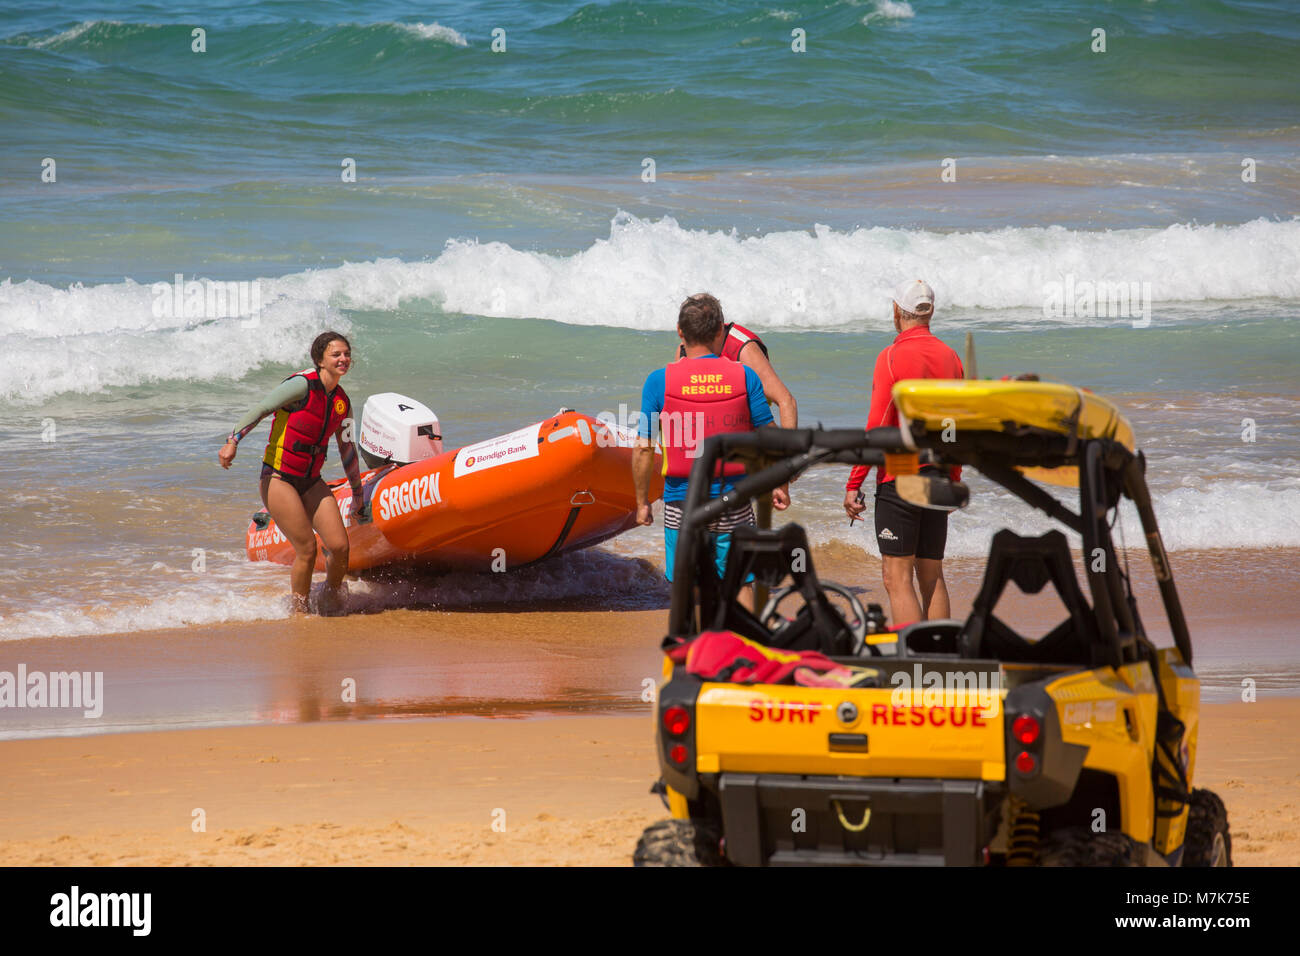 Les bénévoles de surf australienne avec Zodiac gonflable et beach buggy transports le Curl Curl Beach au nord de Sydney, Australie Banque D'Images